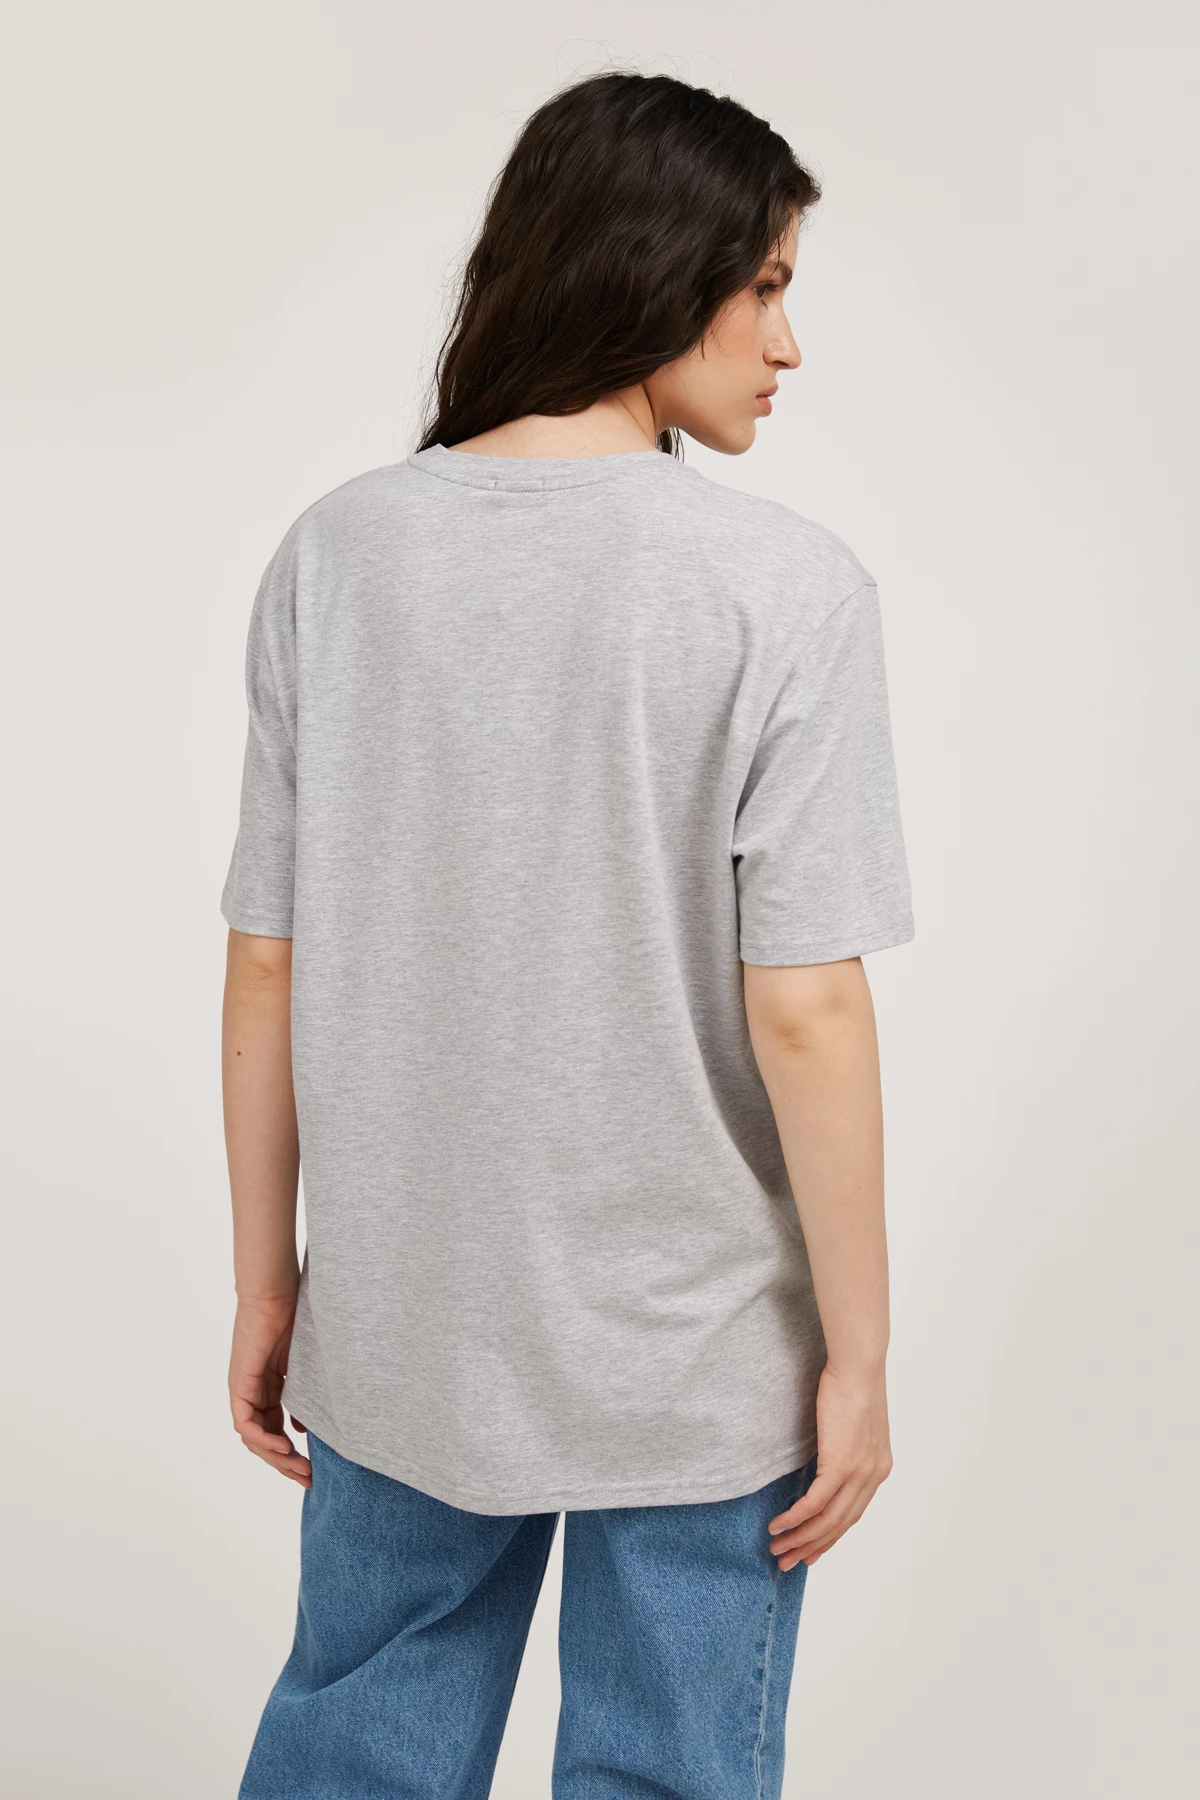  Grey-melange unisex T-shirt "Chervona kalyna", photo 3